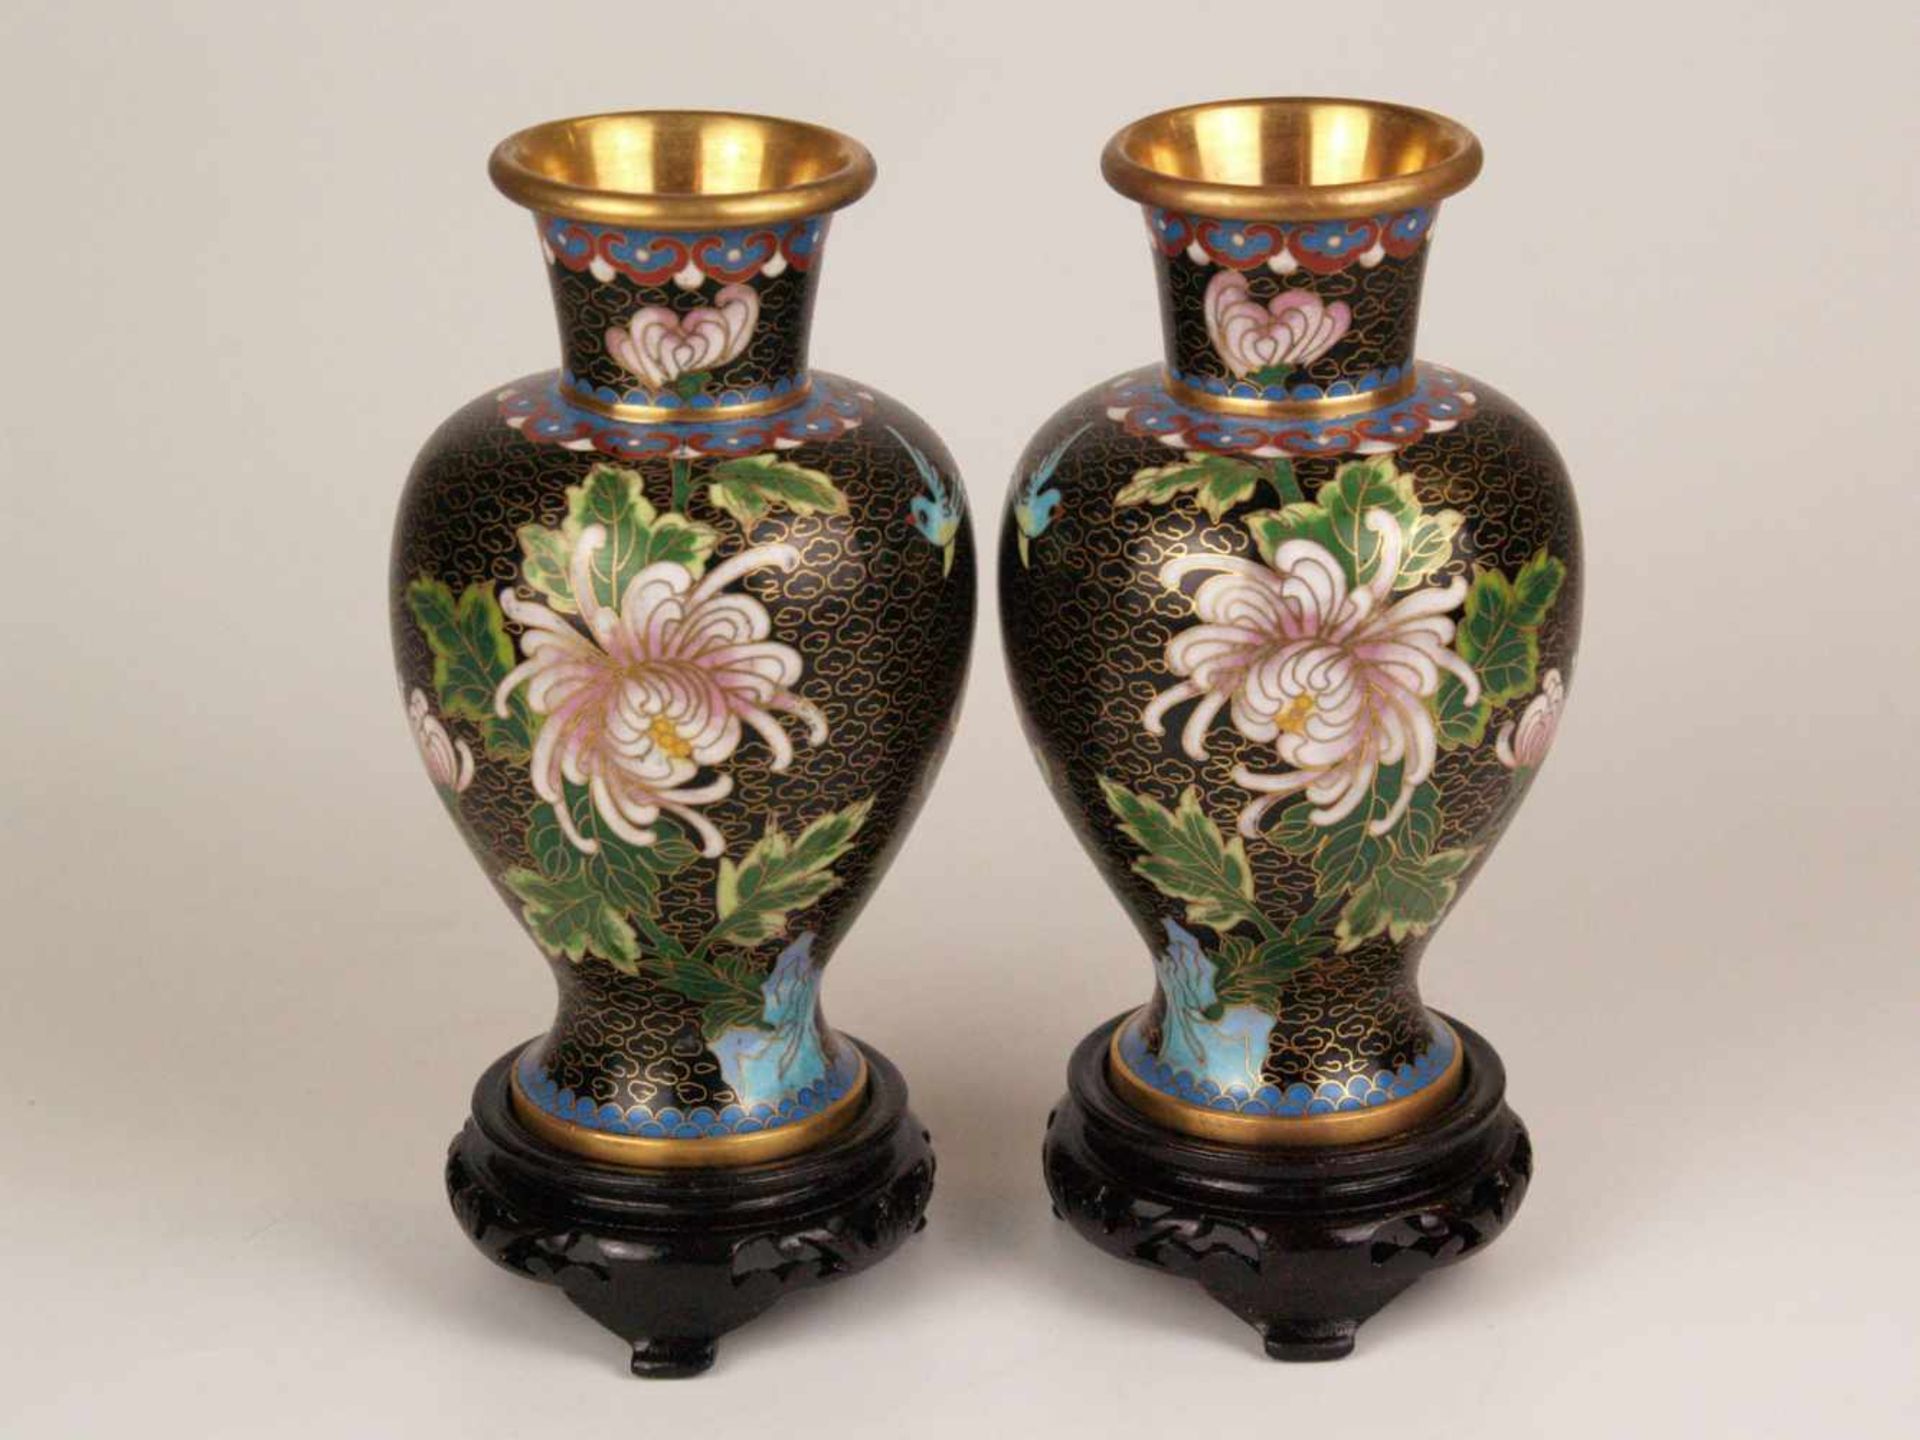 Paar Cloisonné-Vasen - China, 20.Jh., leicht gebauchte Balusterform, Wandung mit Päonienblüten und